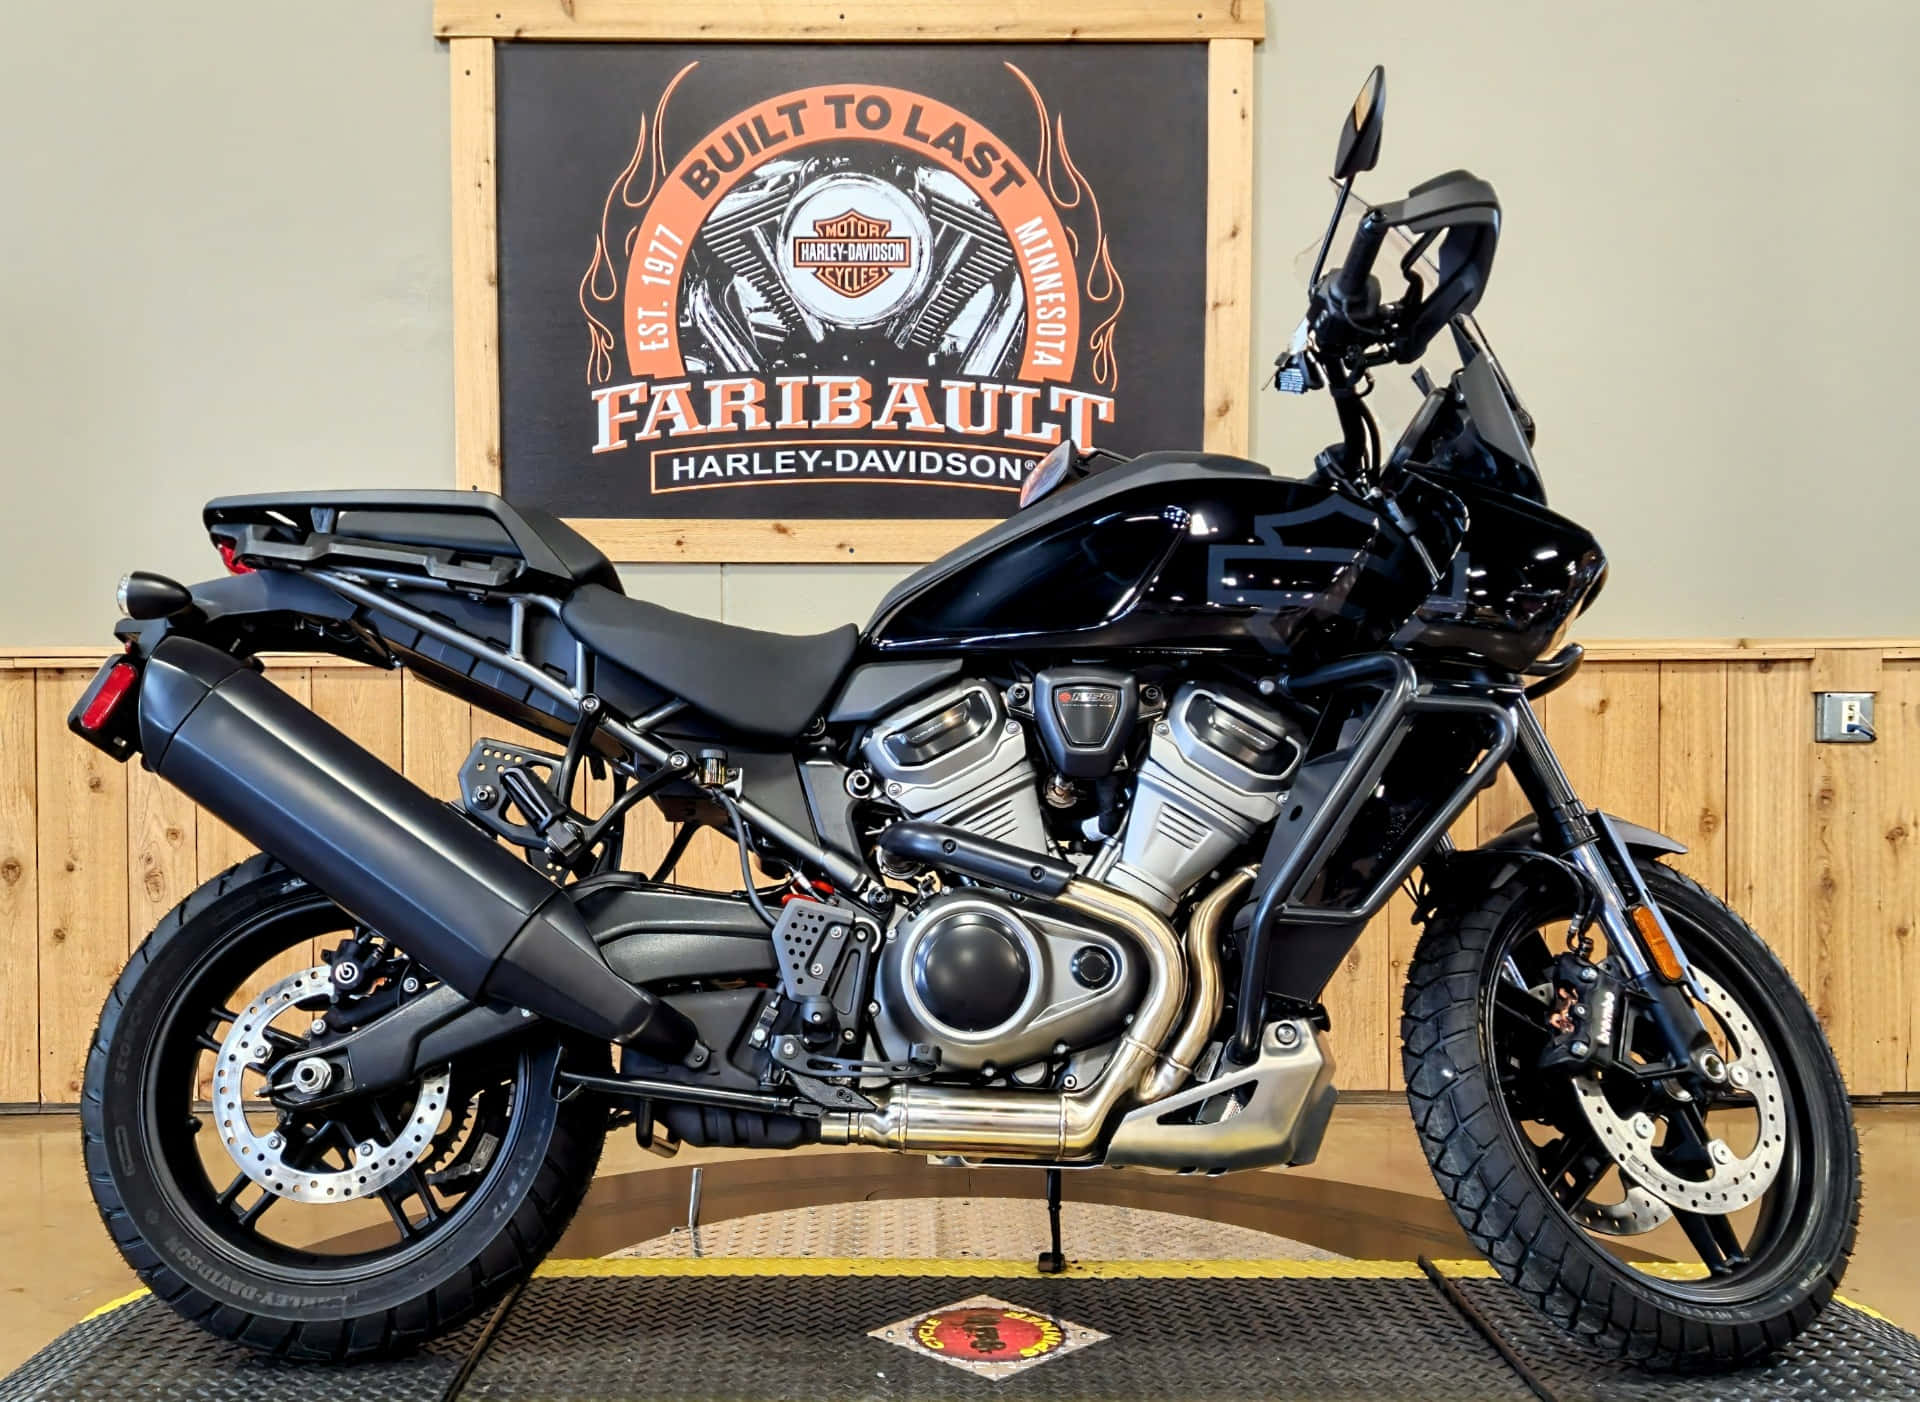 Lalibertà E La Potenza Di Una Motocicletta Harley Davidson